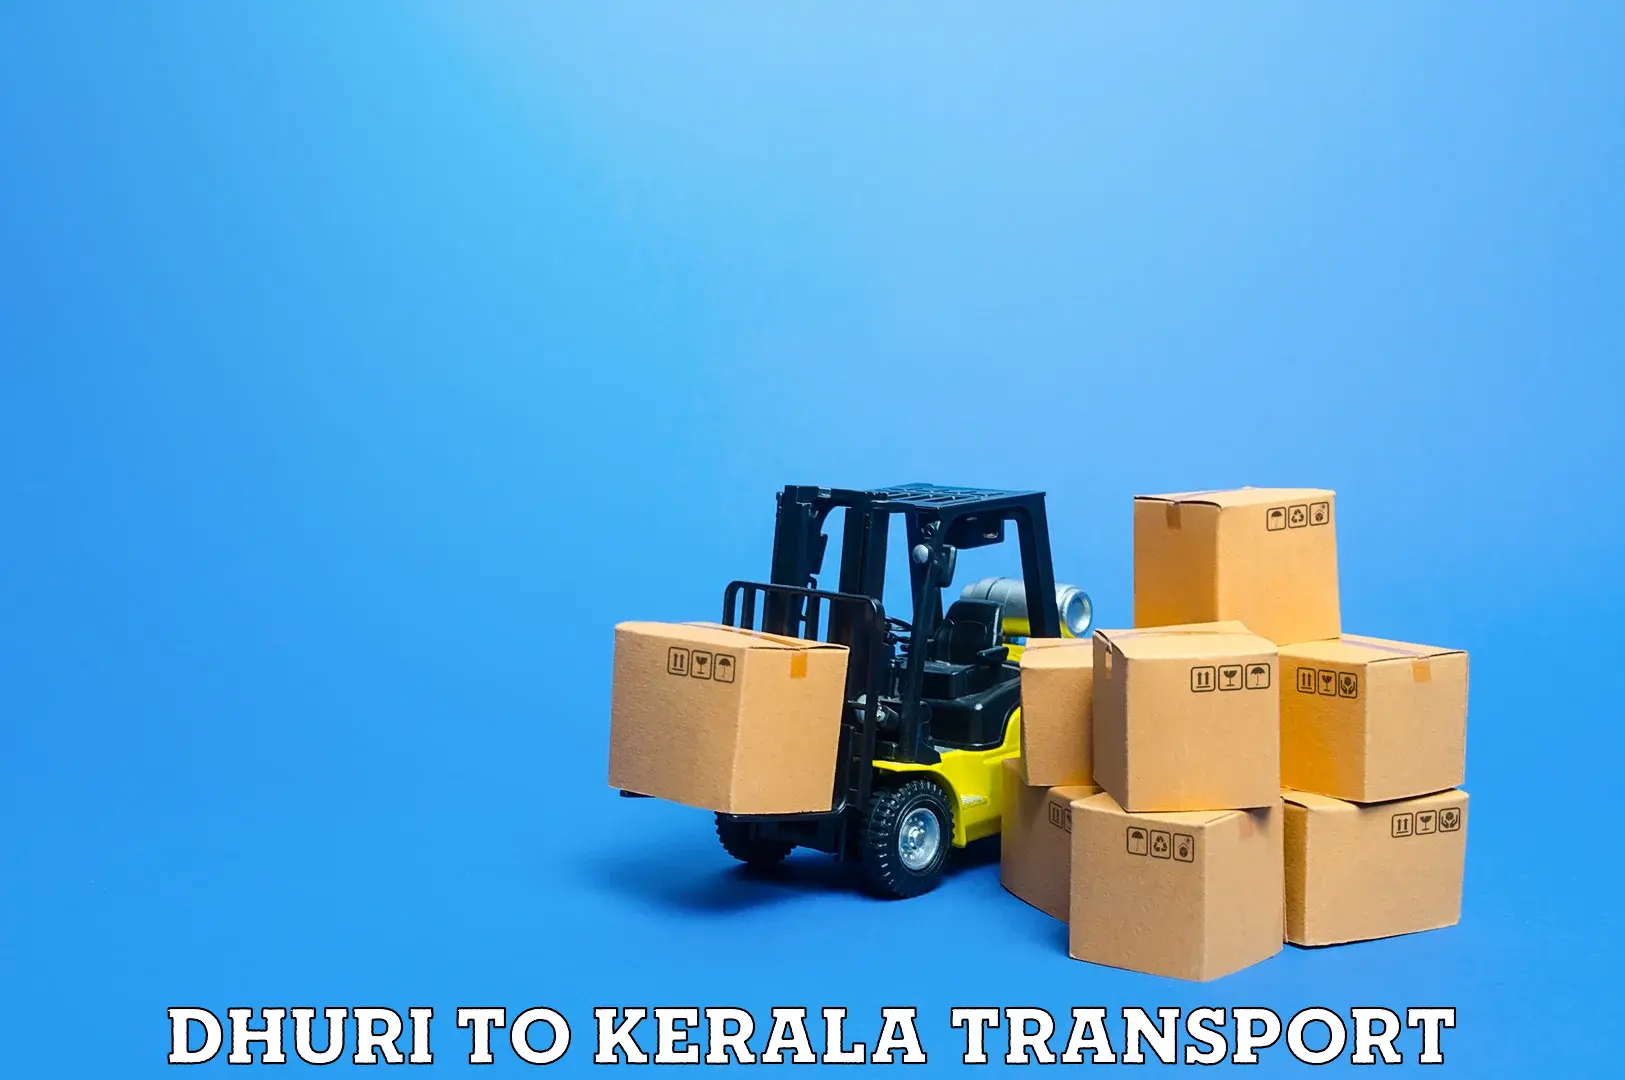 Logistics transportation services Dhuri to Kerala